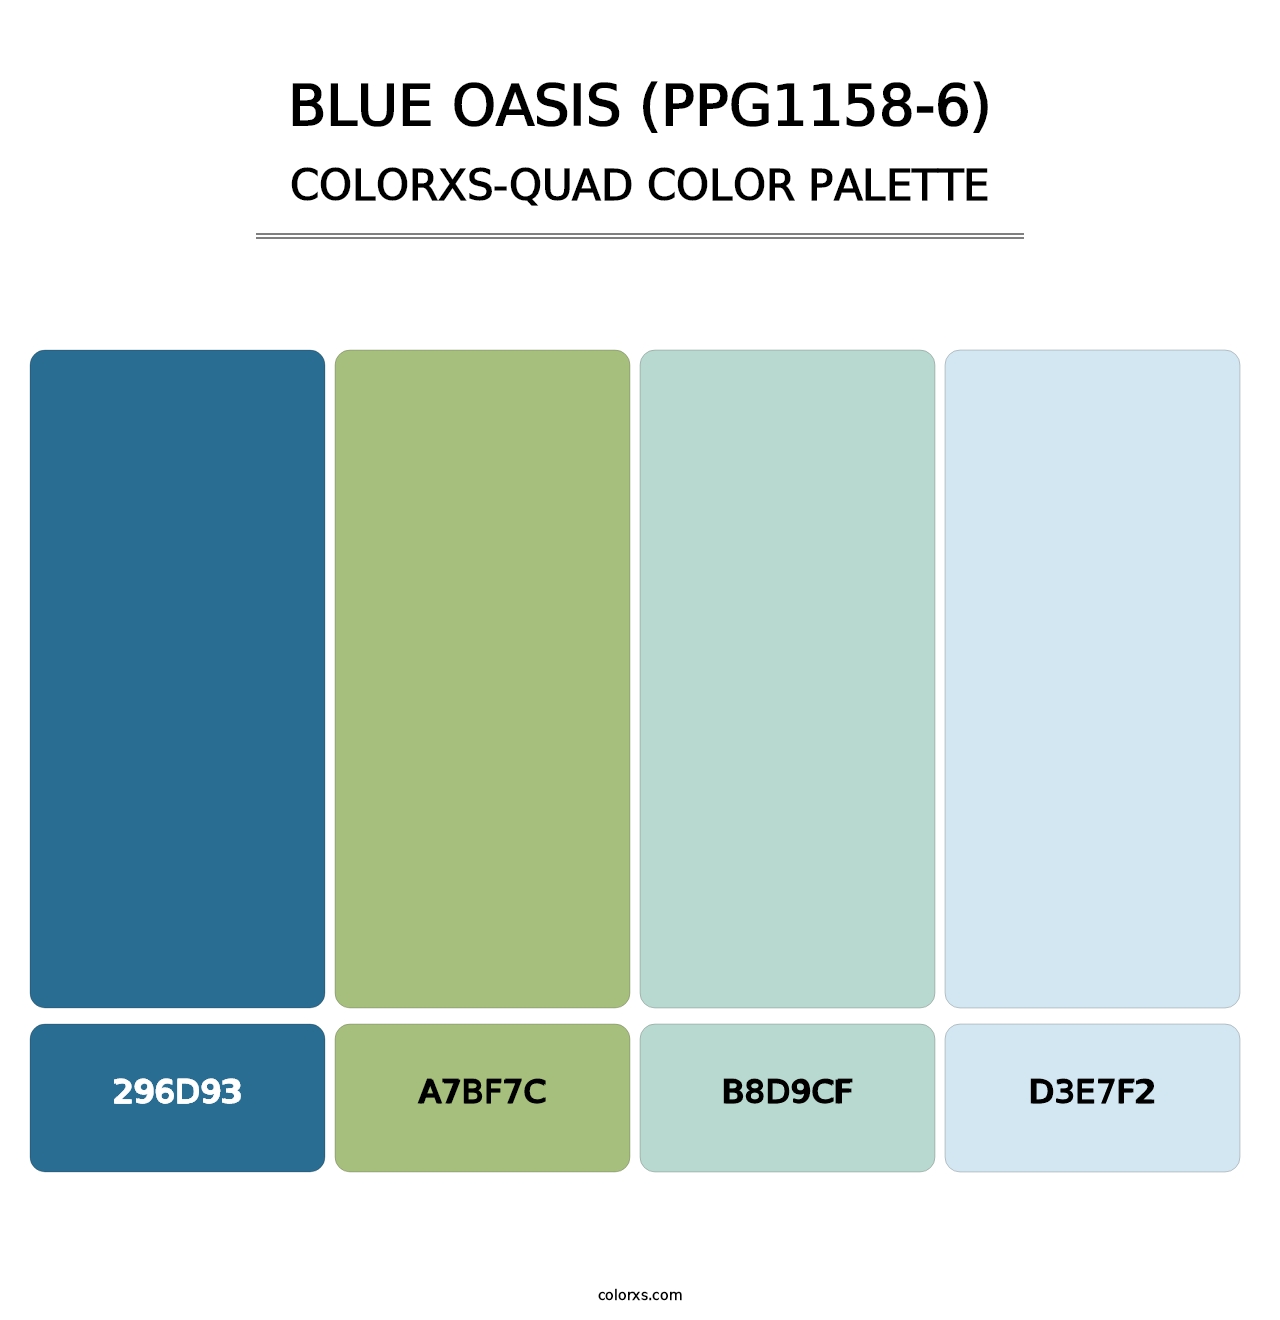 Blue Oasis (PPG1158-6) - Colorxs Quad Palette